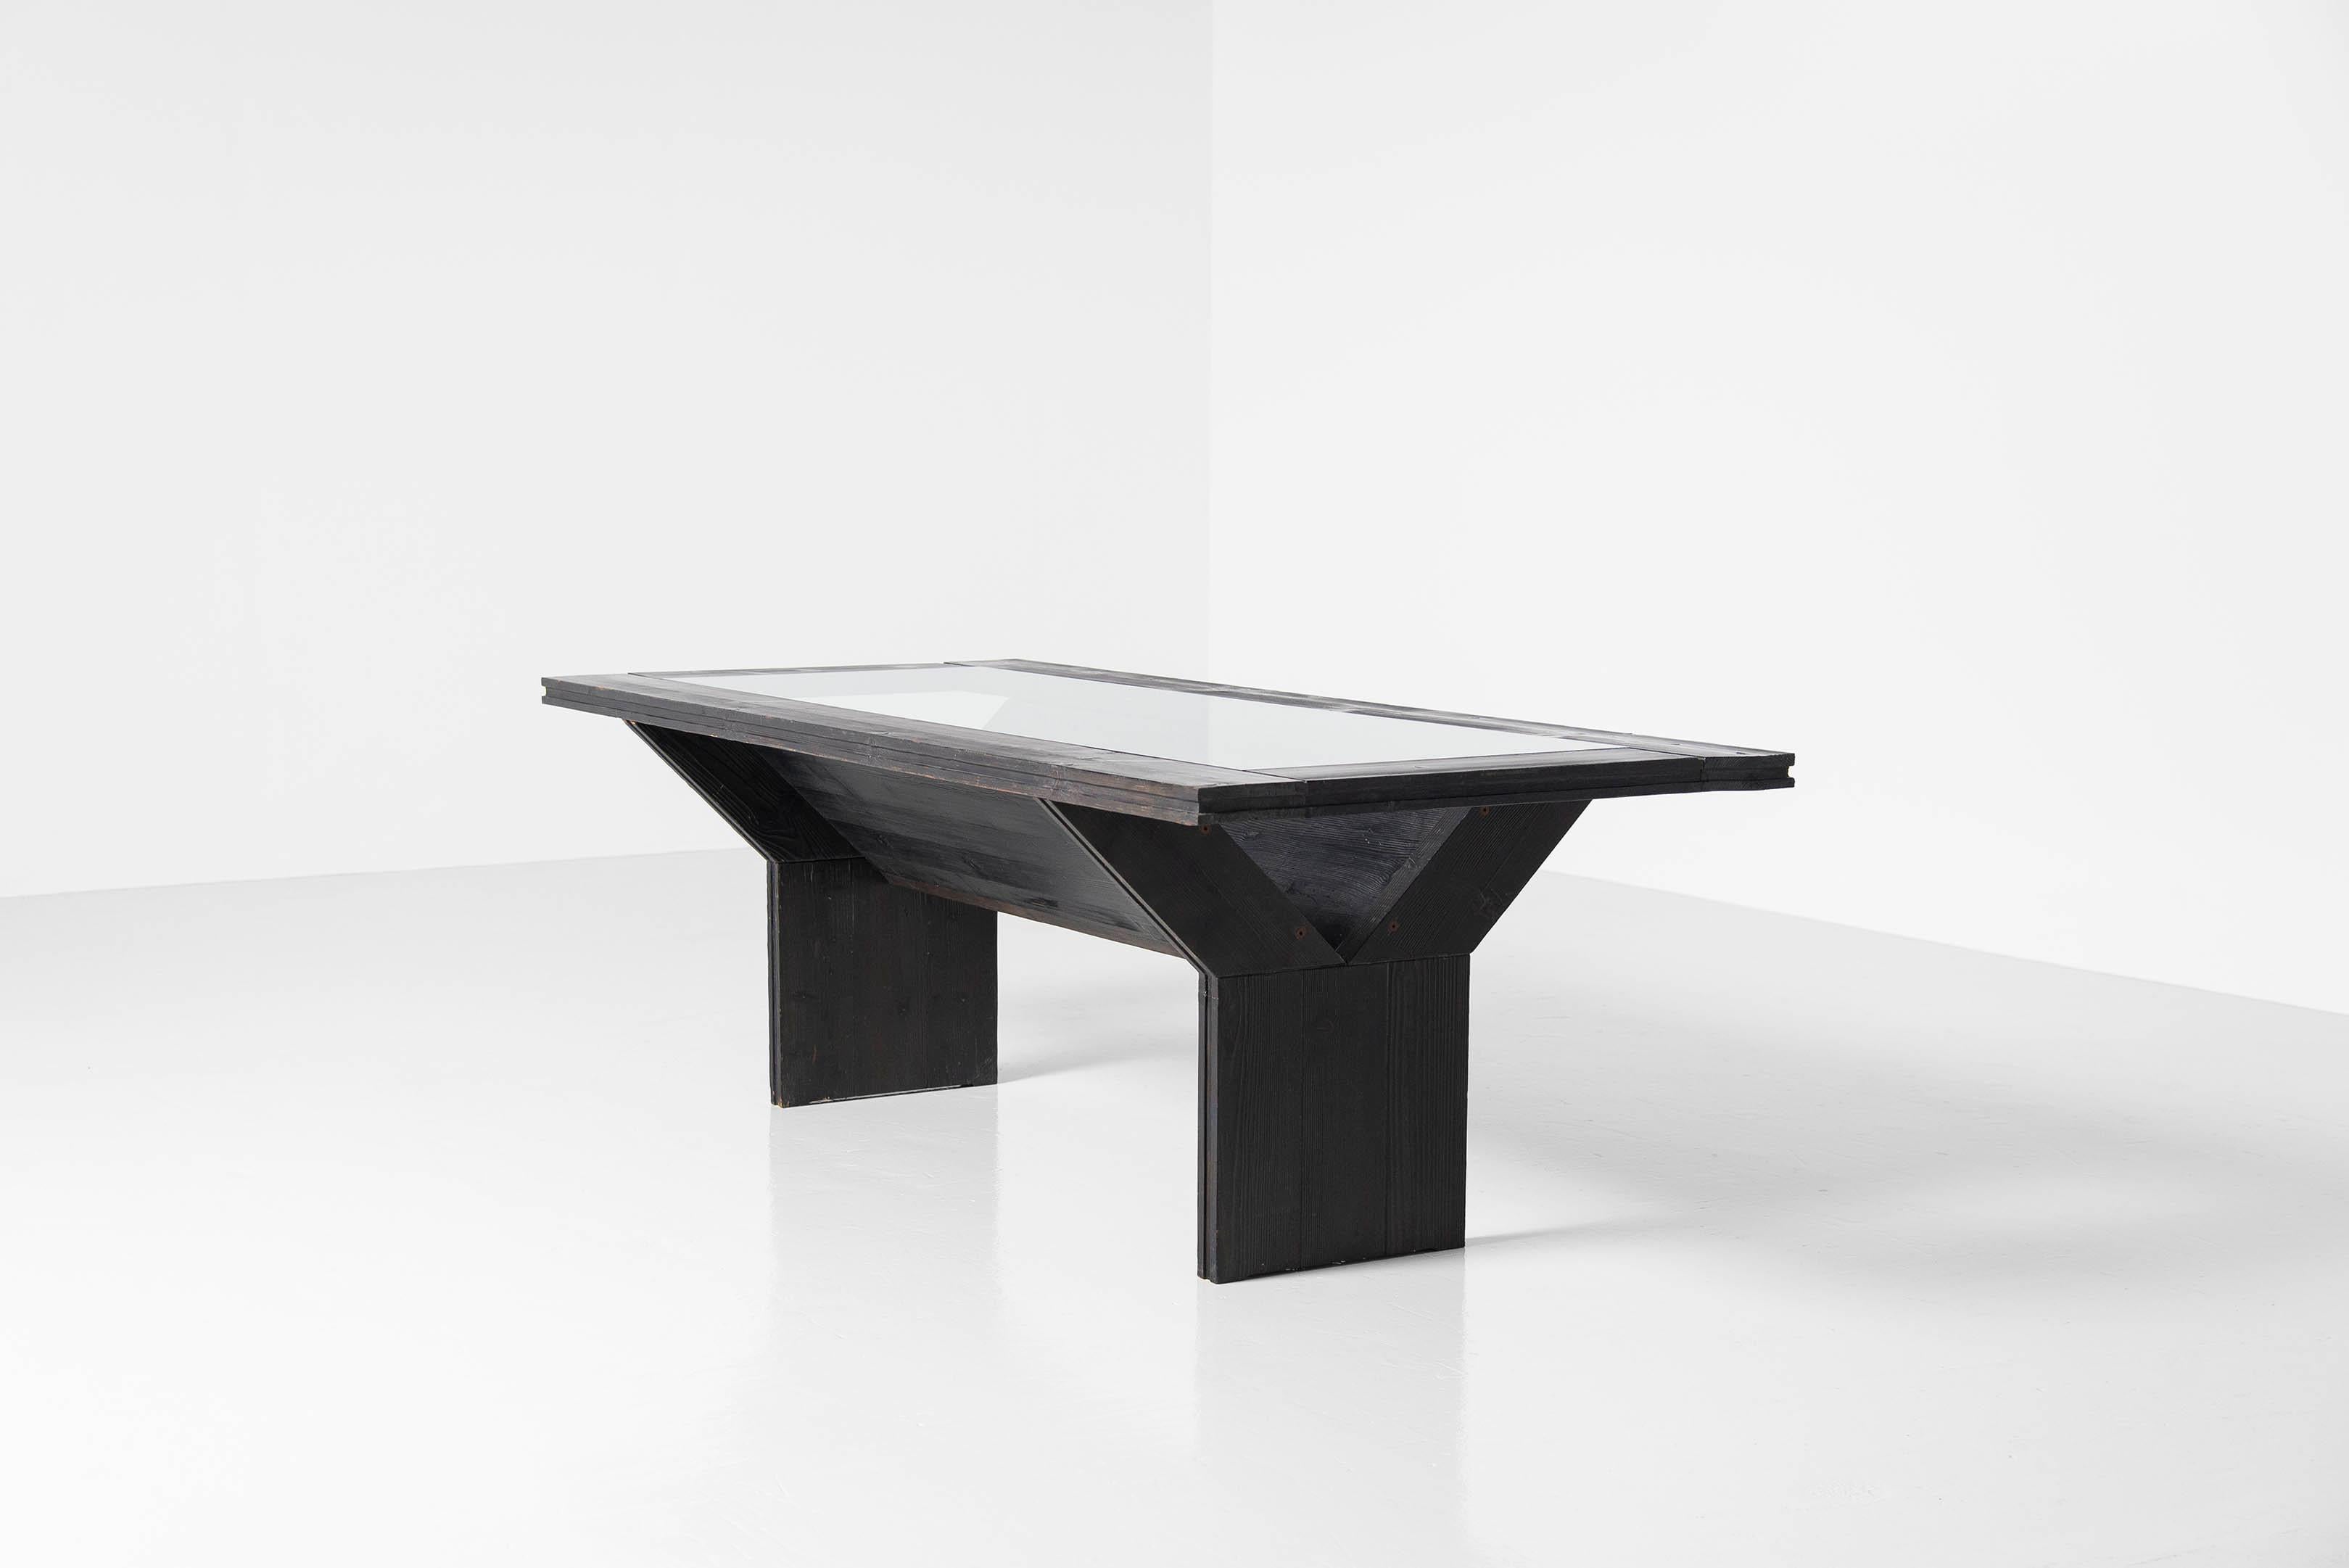 Architektonischer Esstisch Modell T30, entworfen von Edoardo Landi und hergestellt von Studio D, Italien 1973. Dieser Tisch wurde 1973 vom Architekten Landi entworfen und in einer sehr kleinen Serie von StudioD zusammen mit einigen Stühlen,